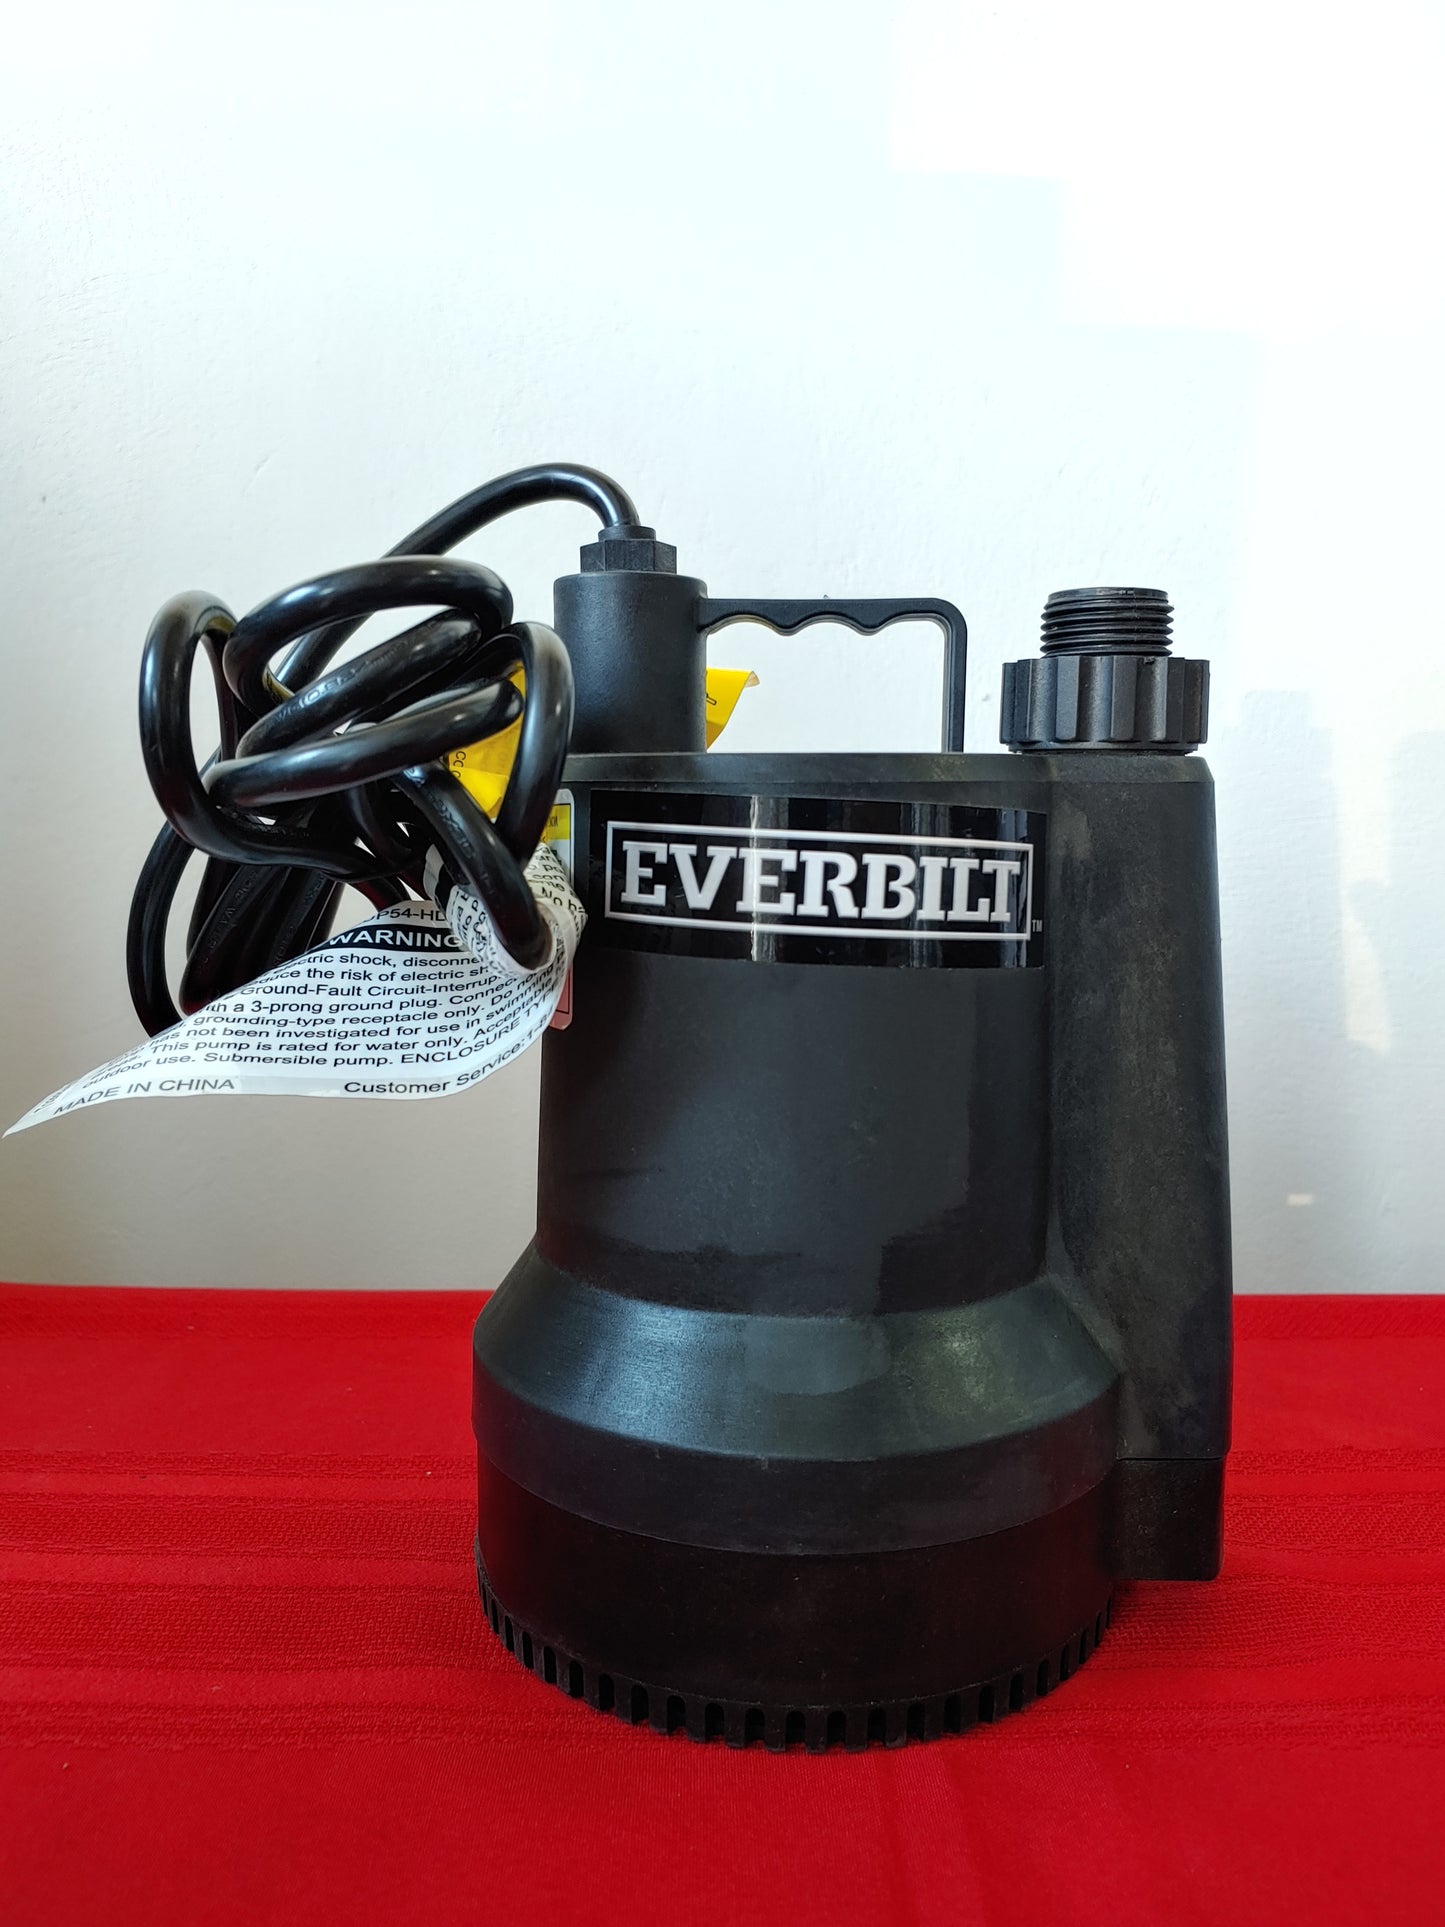 Bomba sumergible portátil de uso general 1/6 HP - Everbilt (Nuevo, caja abierta)